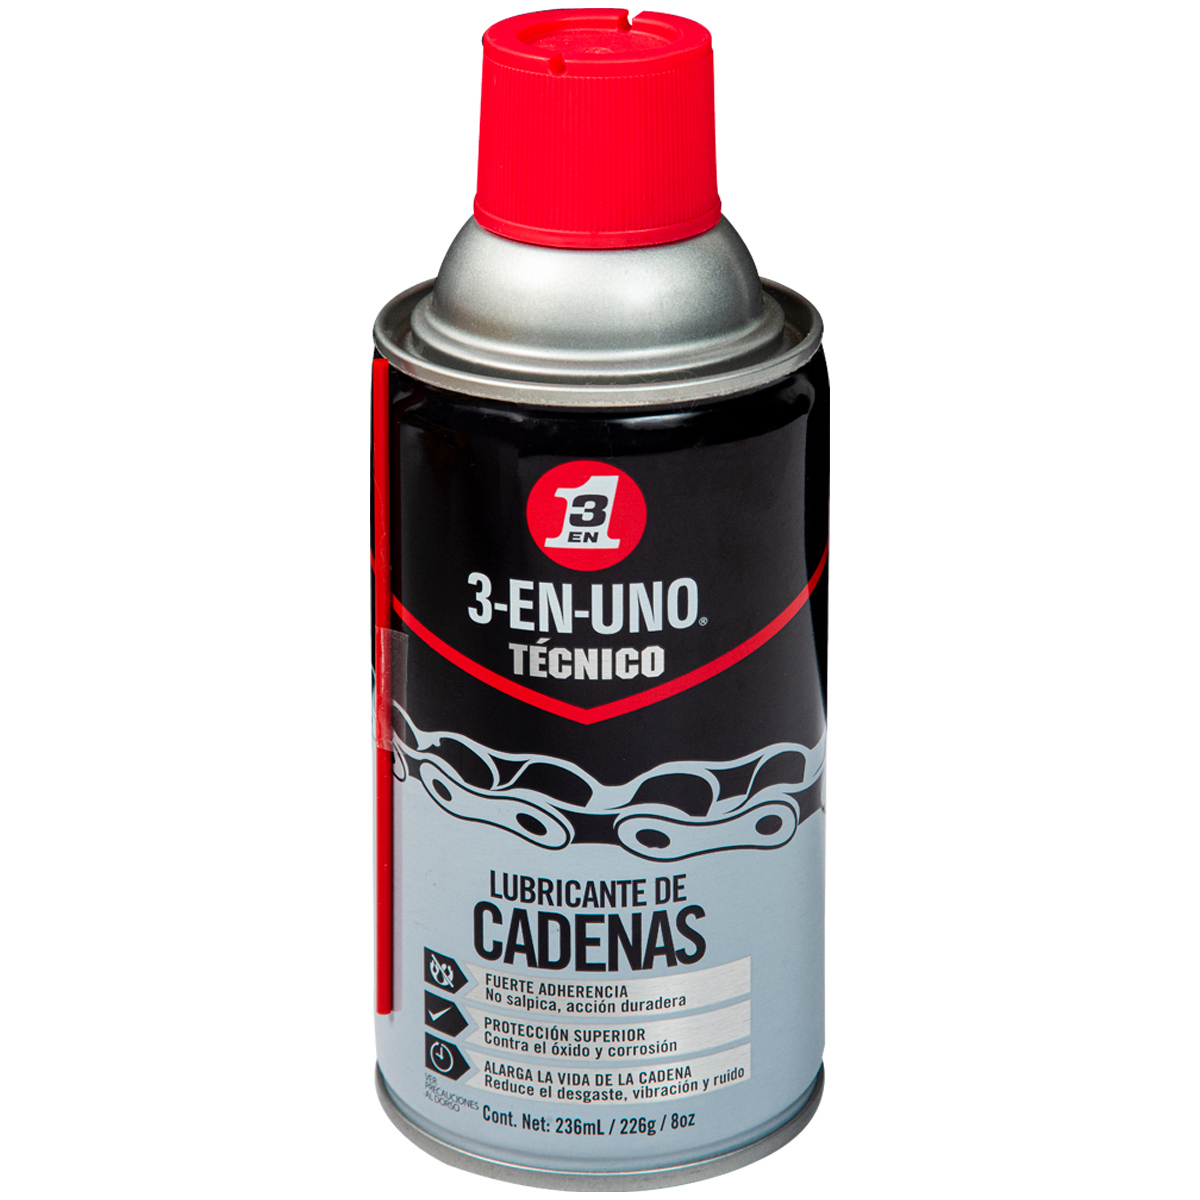 Lubricante para Cadenas 3 en 1 original - Spray 250ml - l